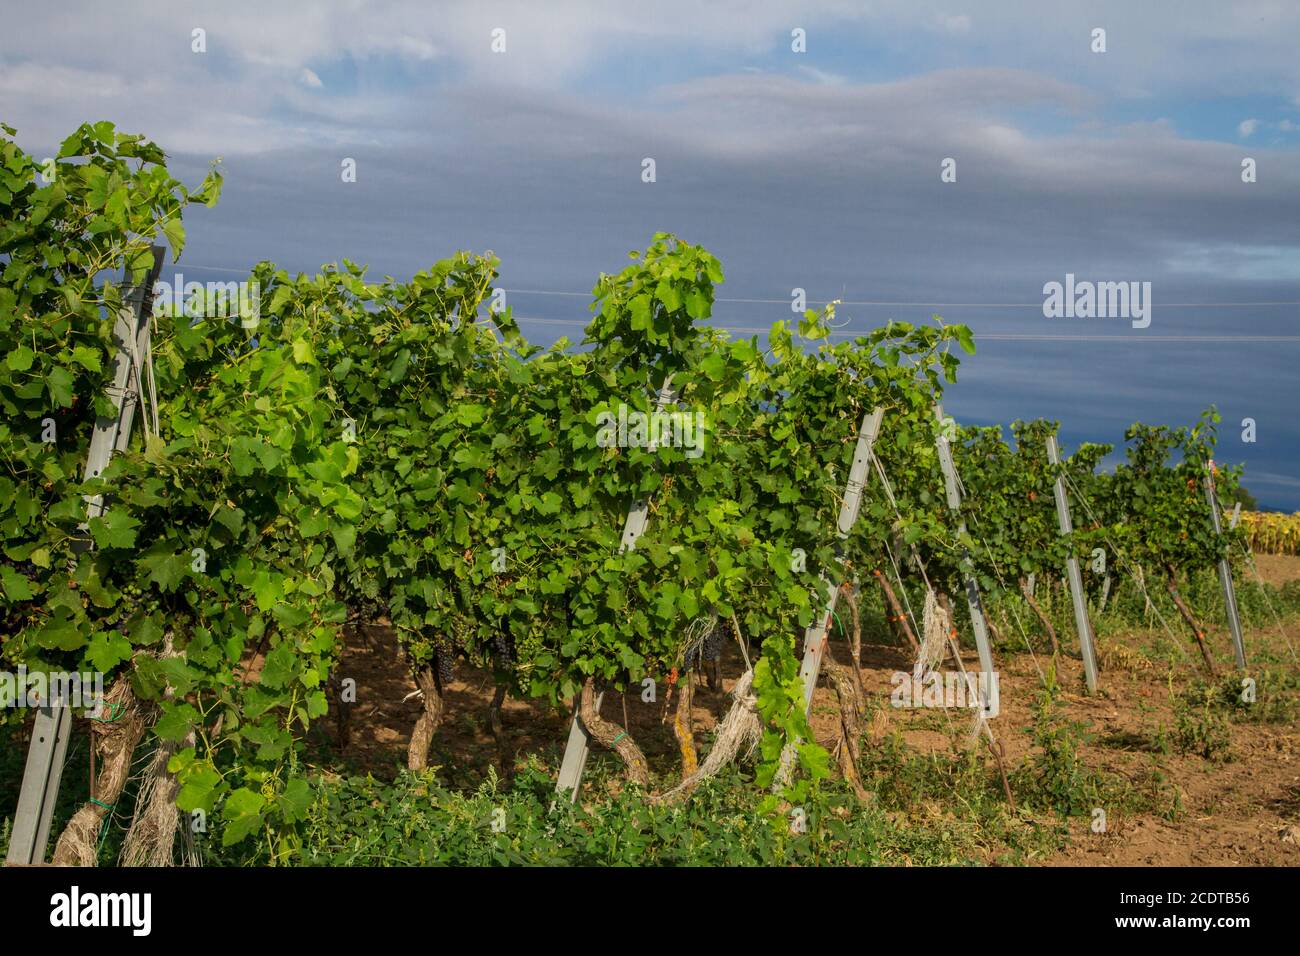 Viticulture, viticulture à Burgenland, Autriche Banque D'Images